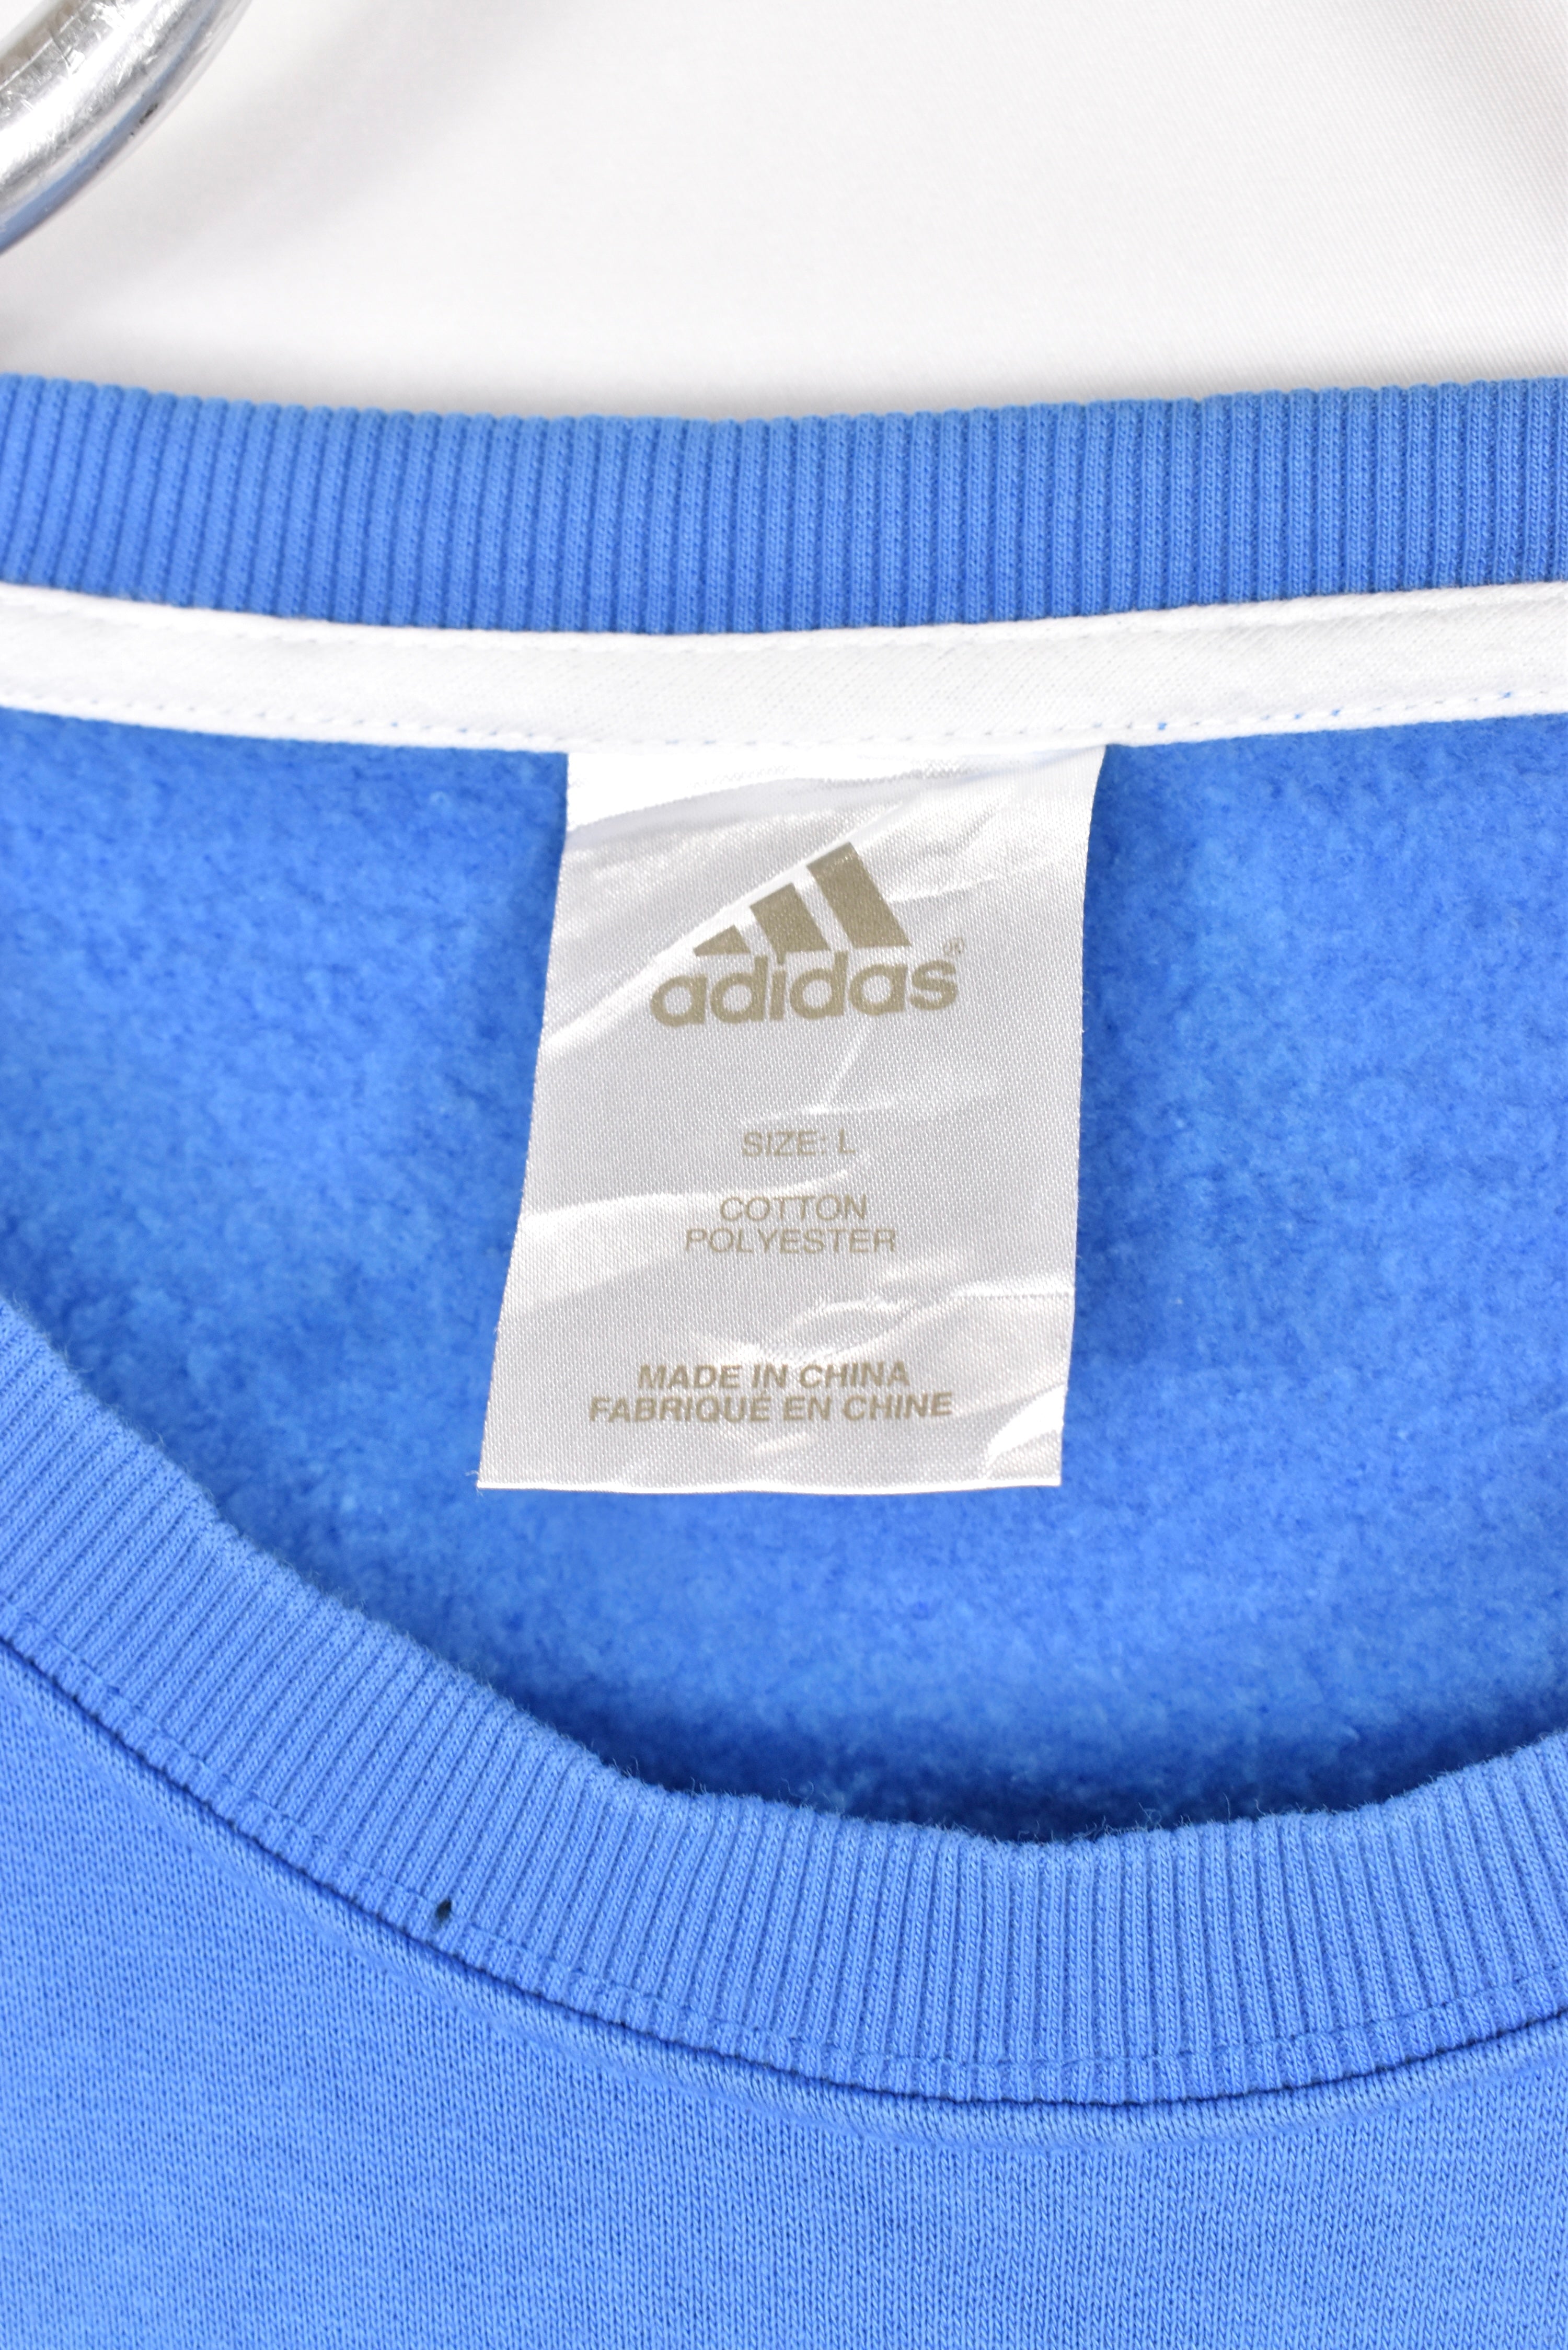 Vintage Adidas sweatshirt, blue embroidered crewneck - AU L ADIDAS